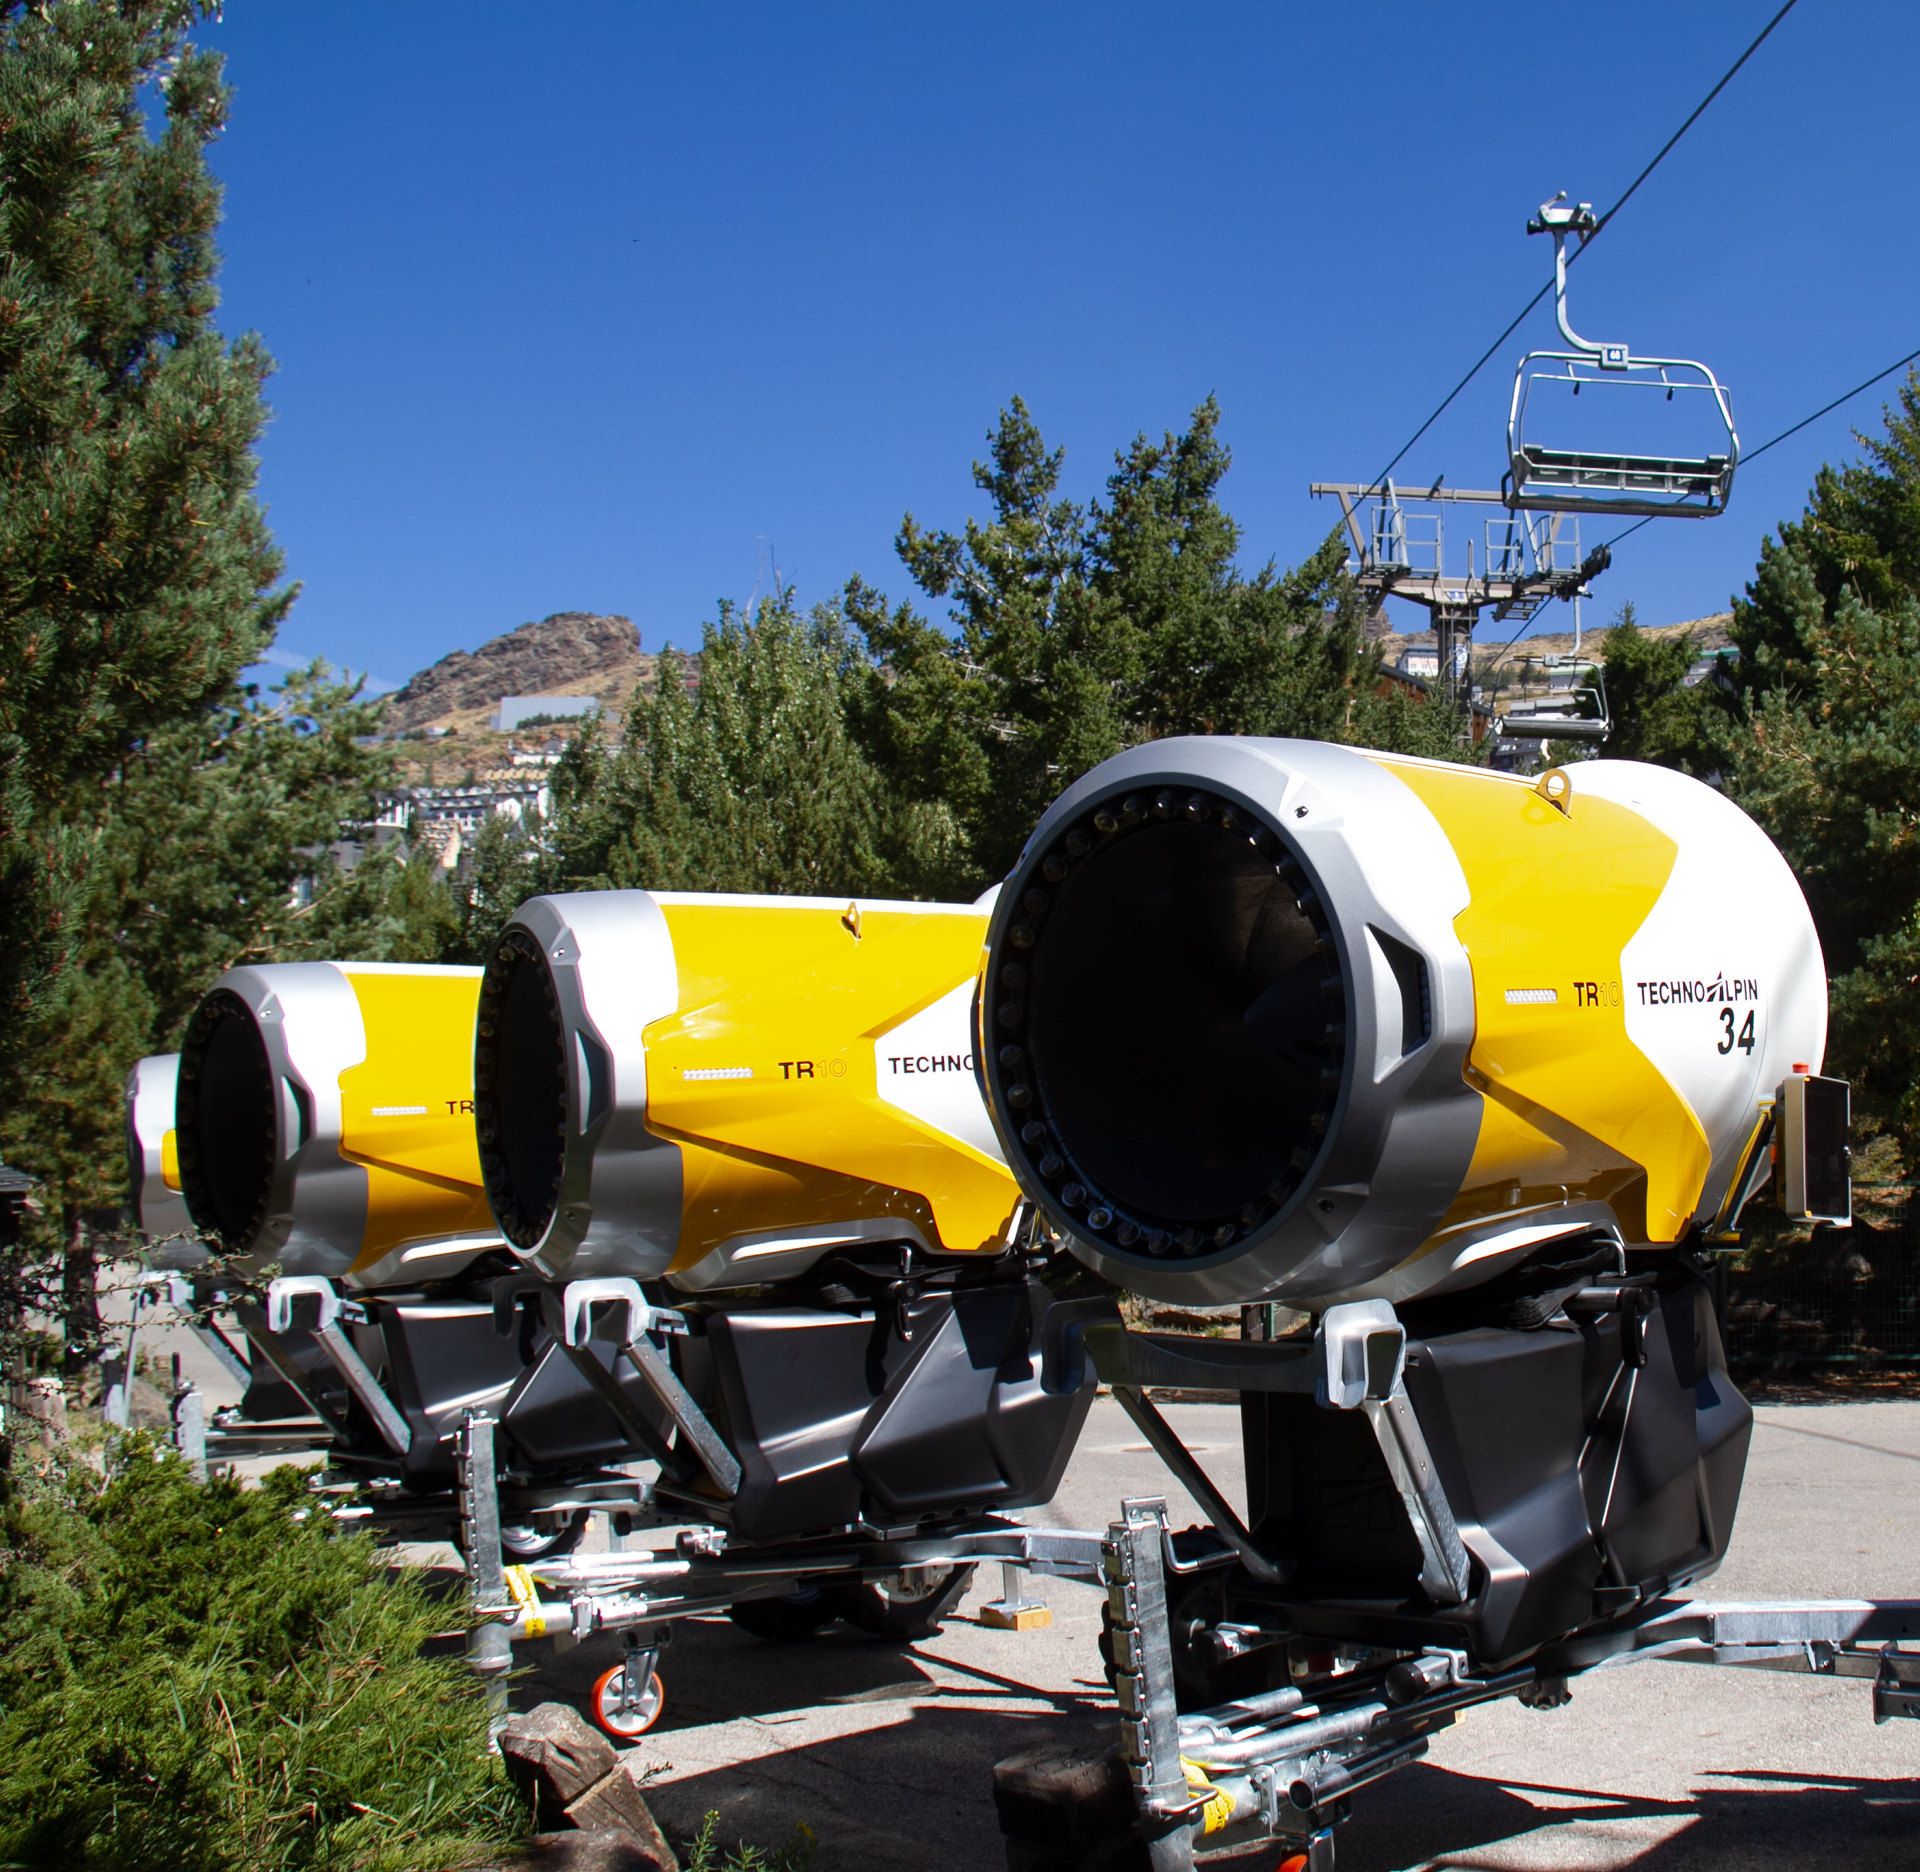 Nuevos cañones de neve artificial para estacion esqui sierra nevada